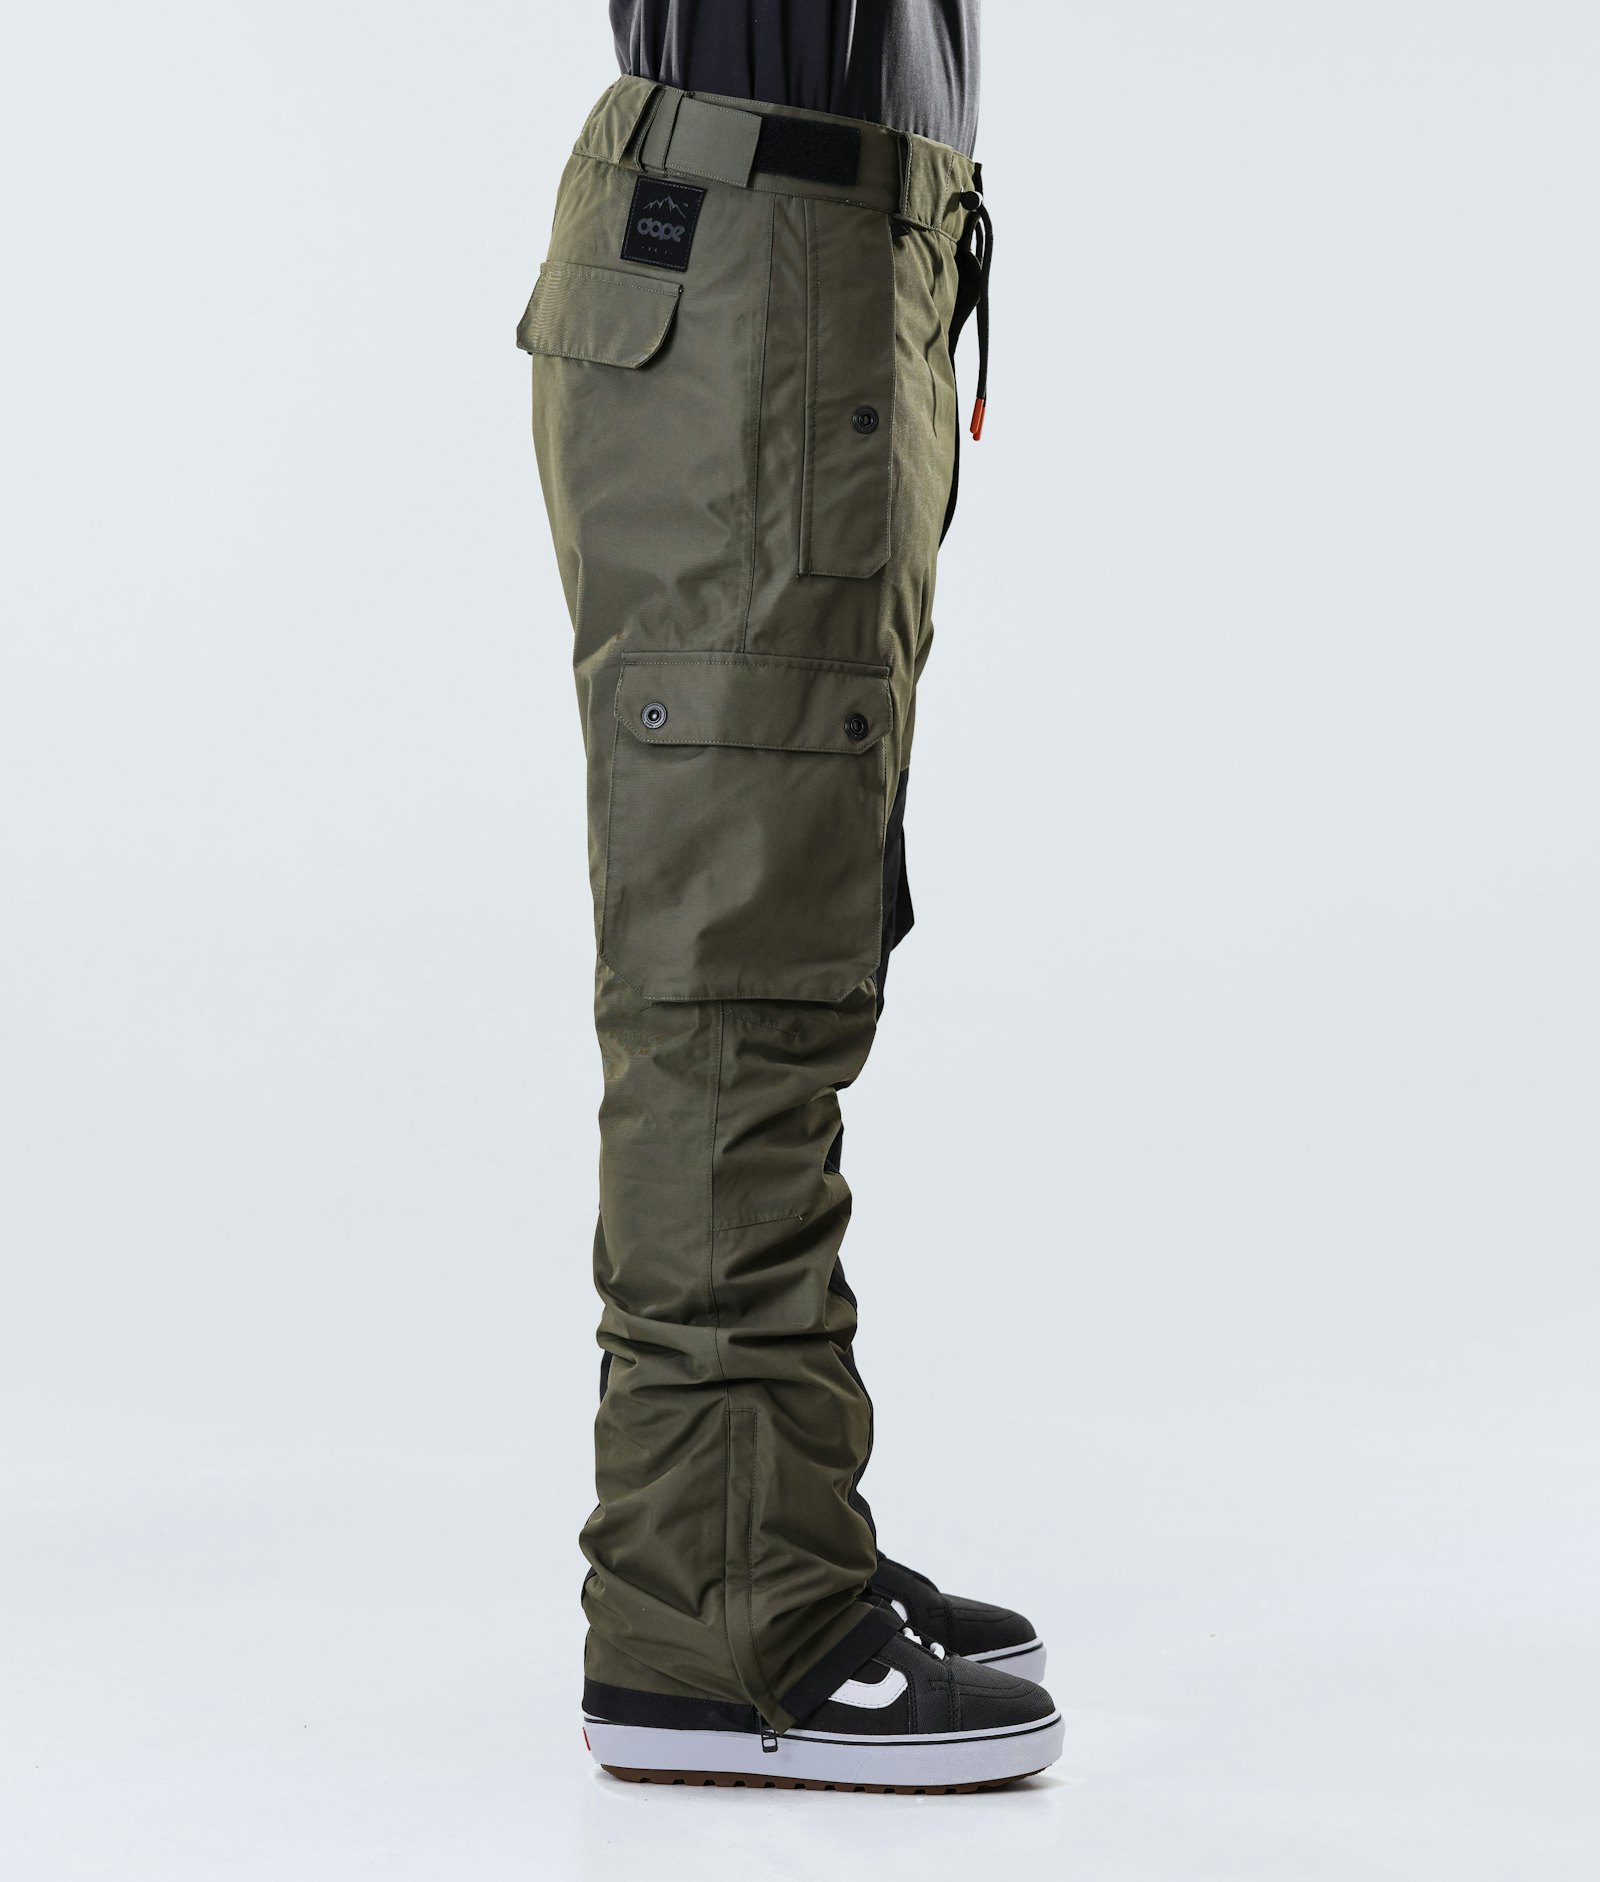 Dope Adept 2020 Spodnie Snowboardowe Mężczyźni Olive Green/Black